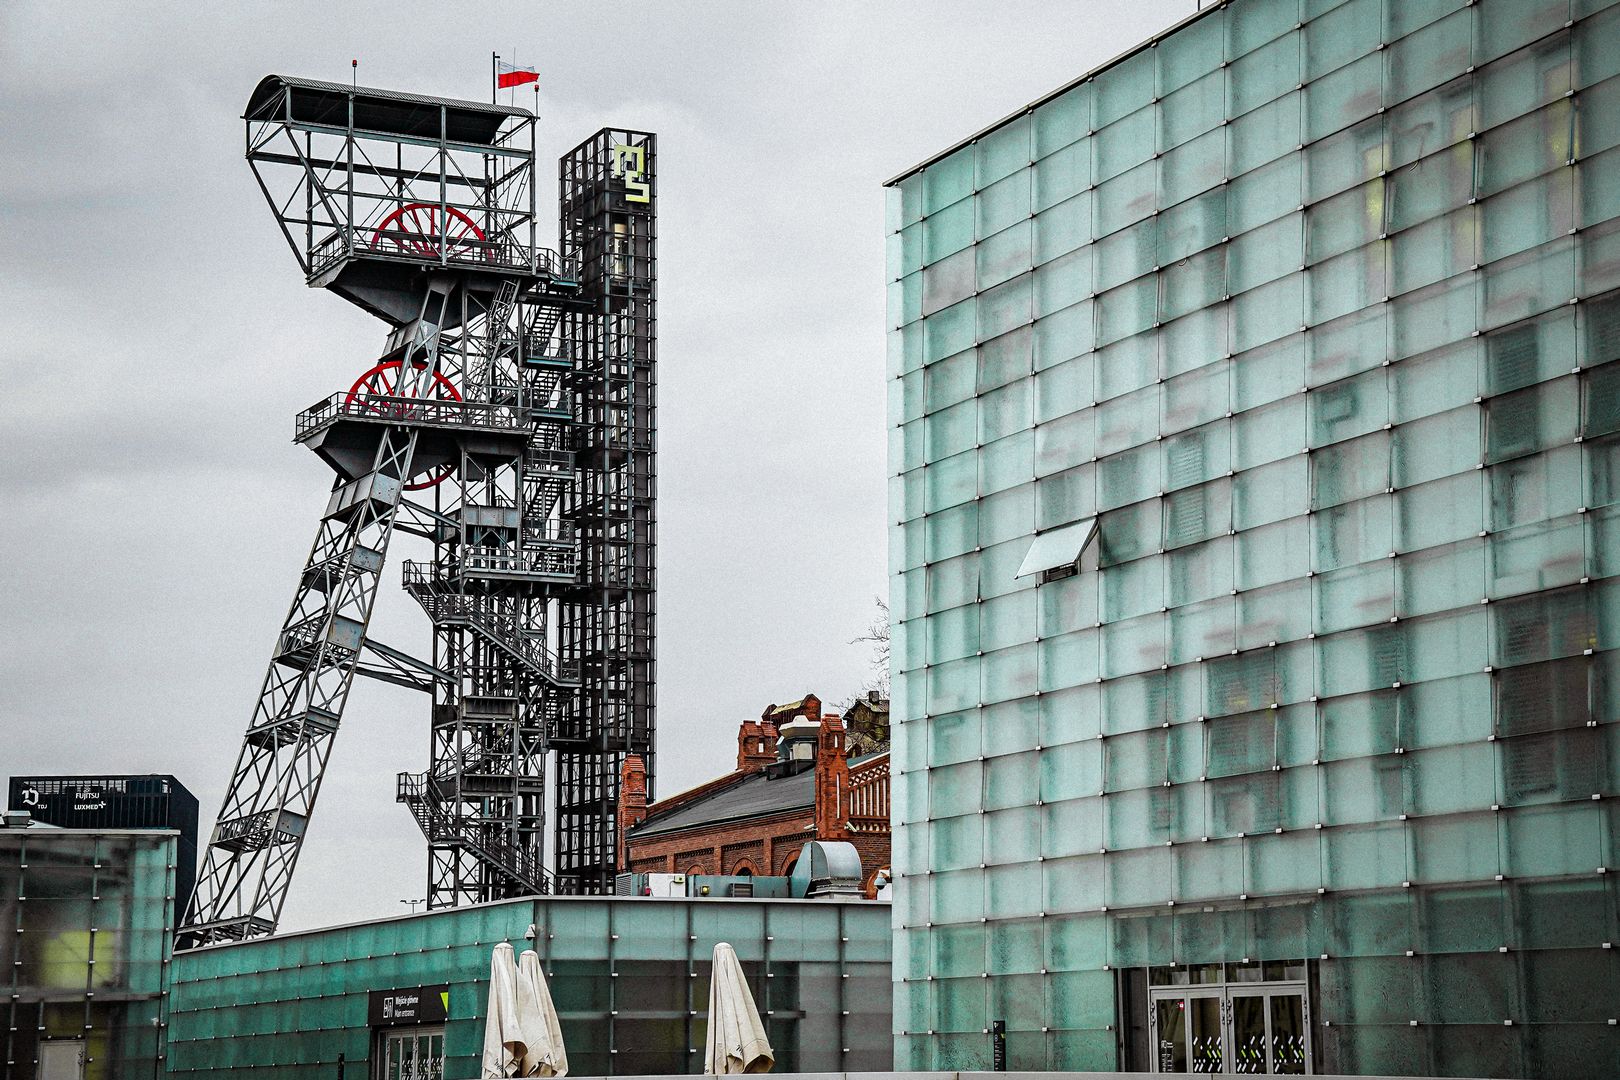 muzeum śląskie i wieża wyciągowa kopalni